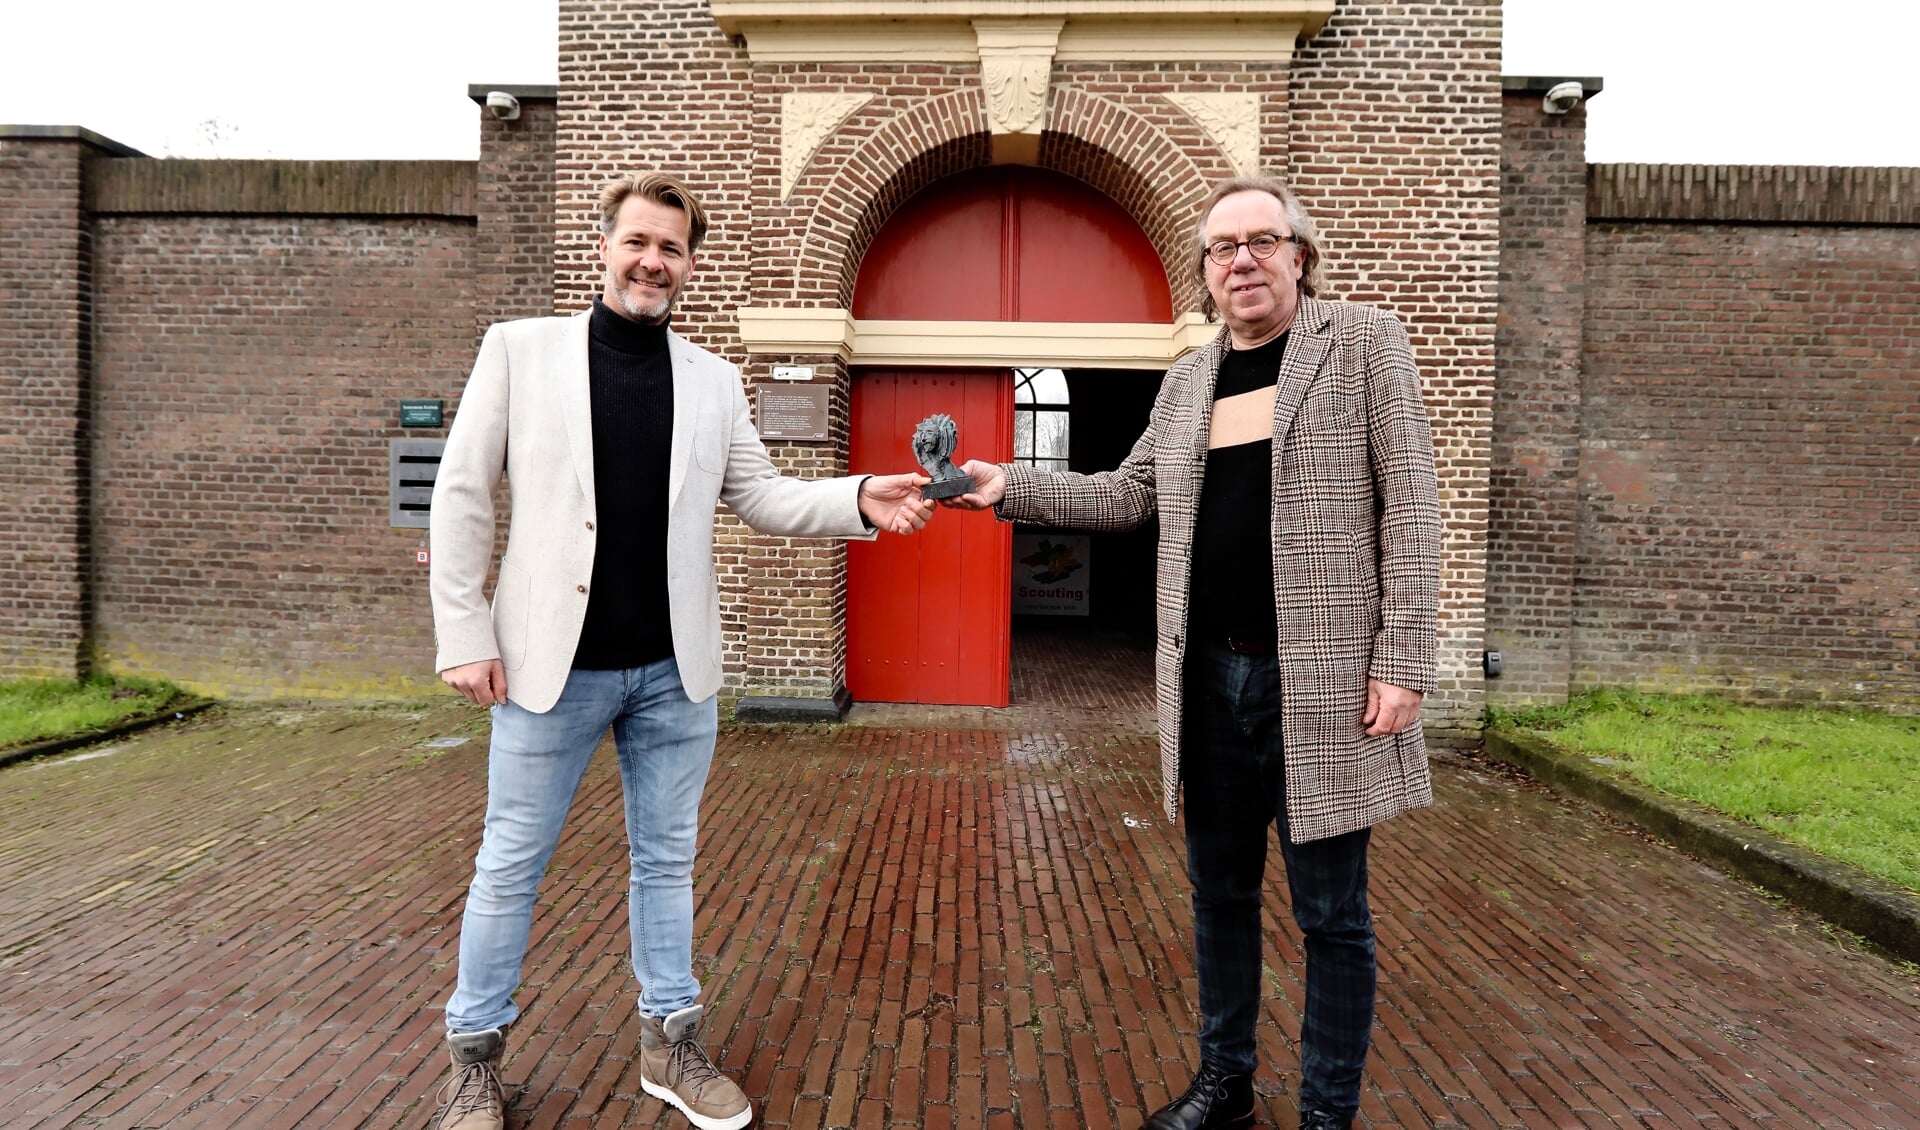 Dé Delftenaar van het Jaar 2020, René van Dijk (l), krijgt de prijs uitgereikt door Dé Delftenaar van het Jaar 2019, Jan van der Mast (r) (Foto: Koos Bommelé)